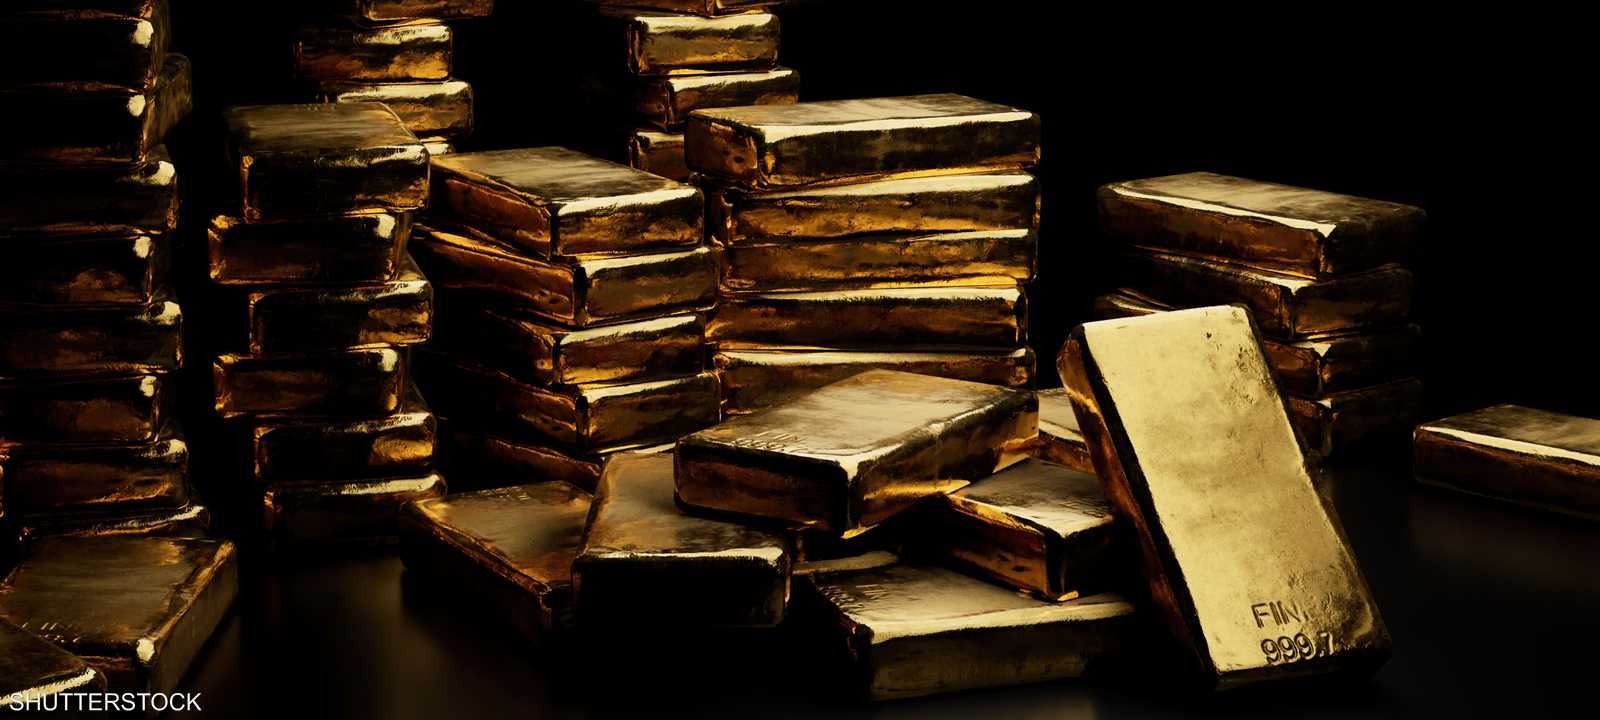 بولي ميتال من أكبر 10 شركات لتعدين الذهب في العالم